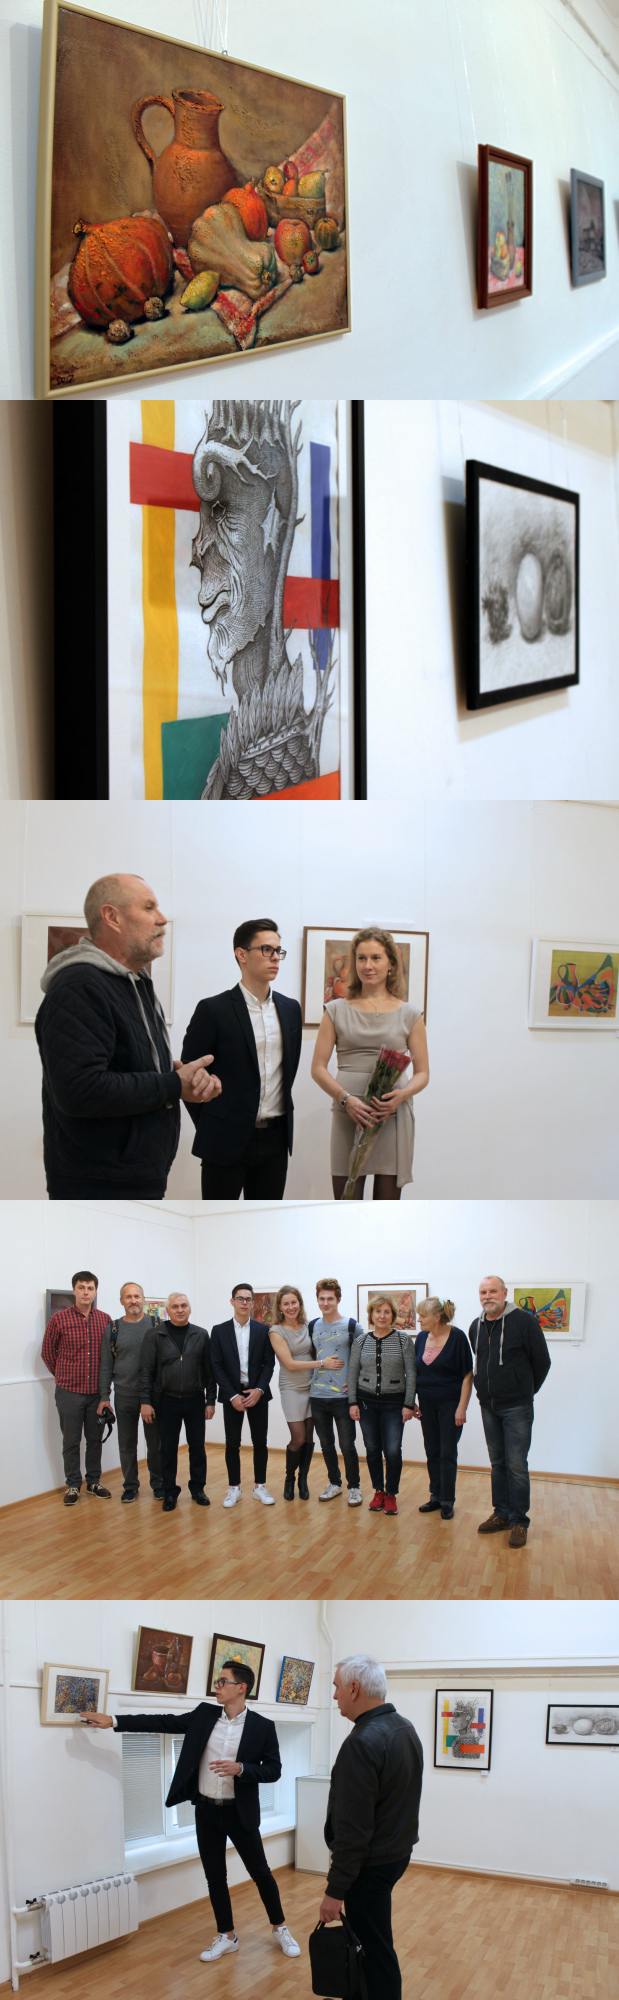 20 октября 2018 - Открытие выставки Дарьи Шевцовой и Алексея Корчагина